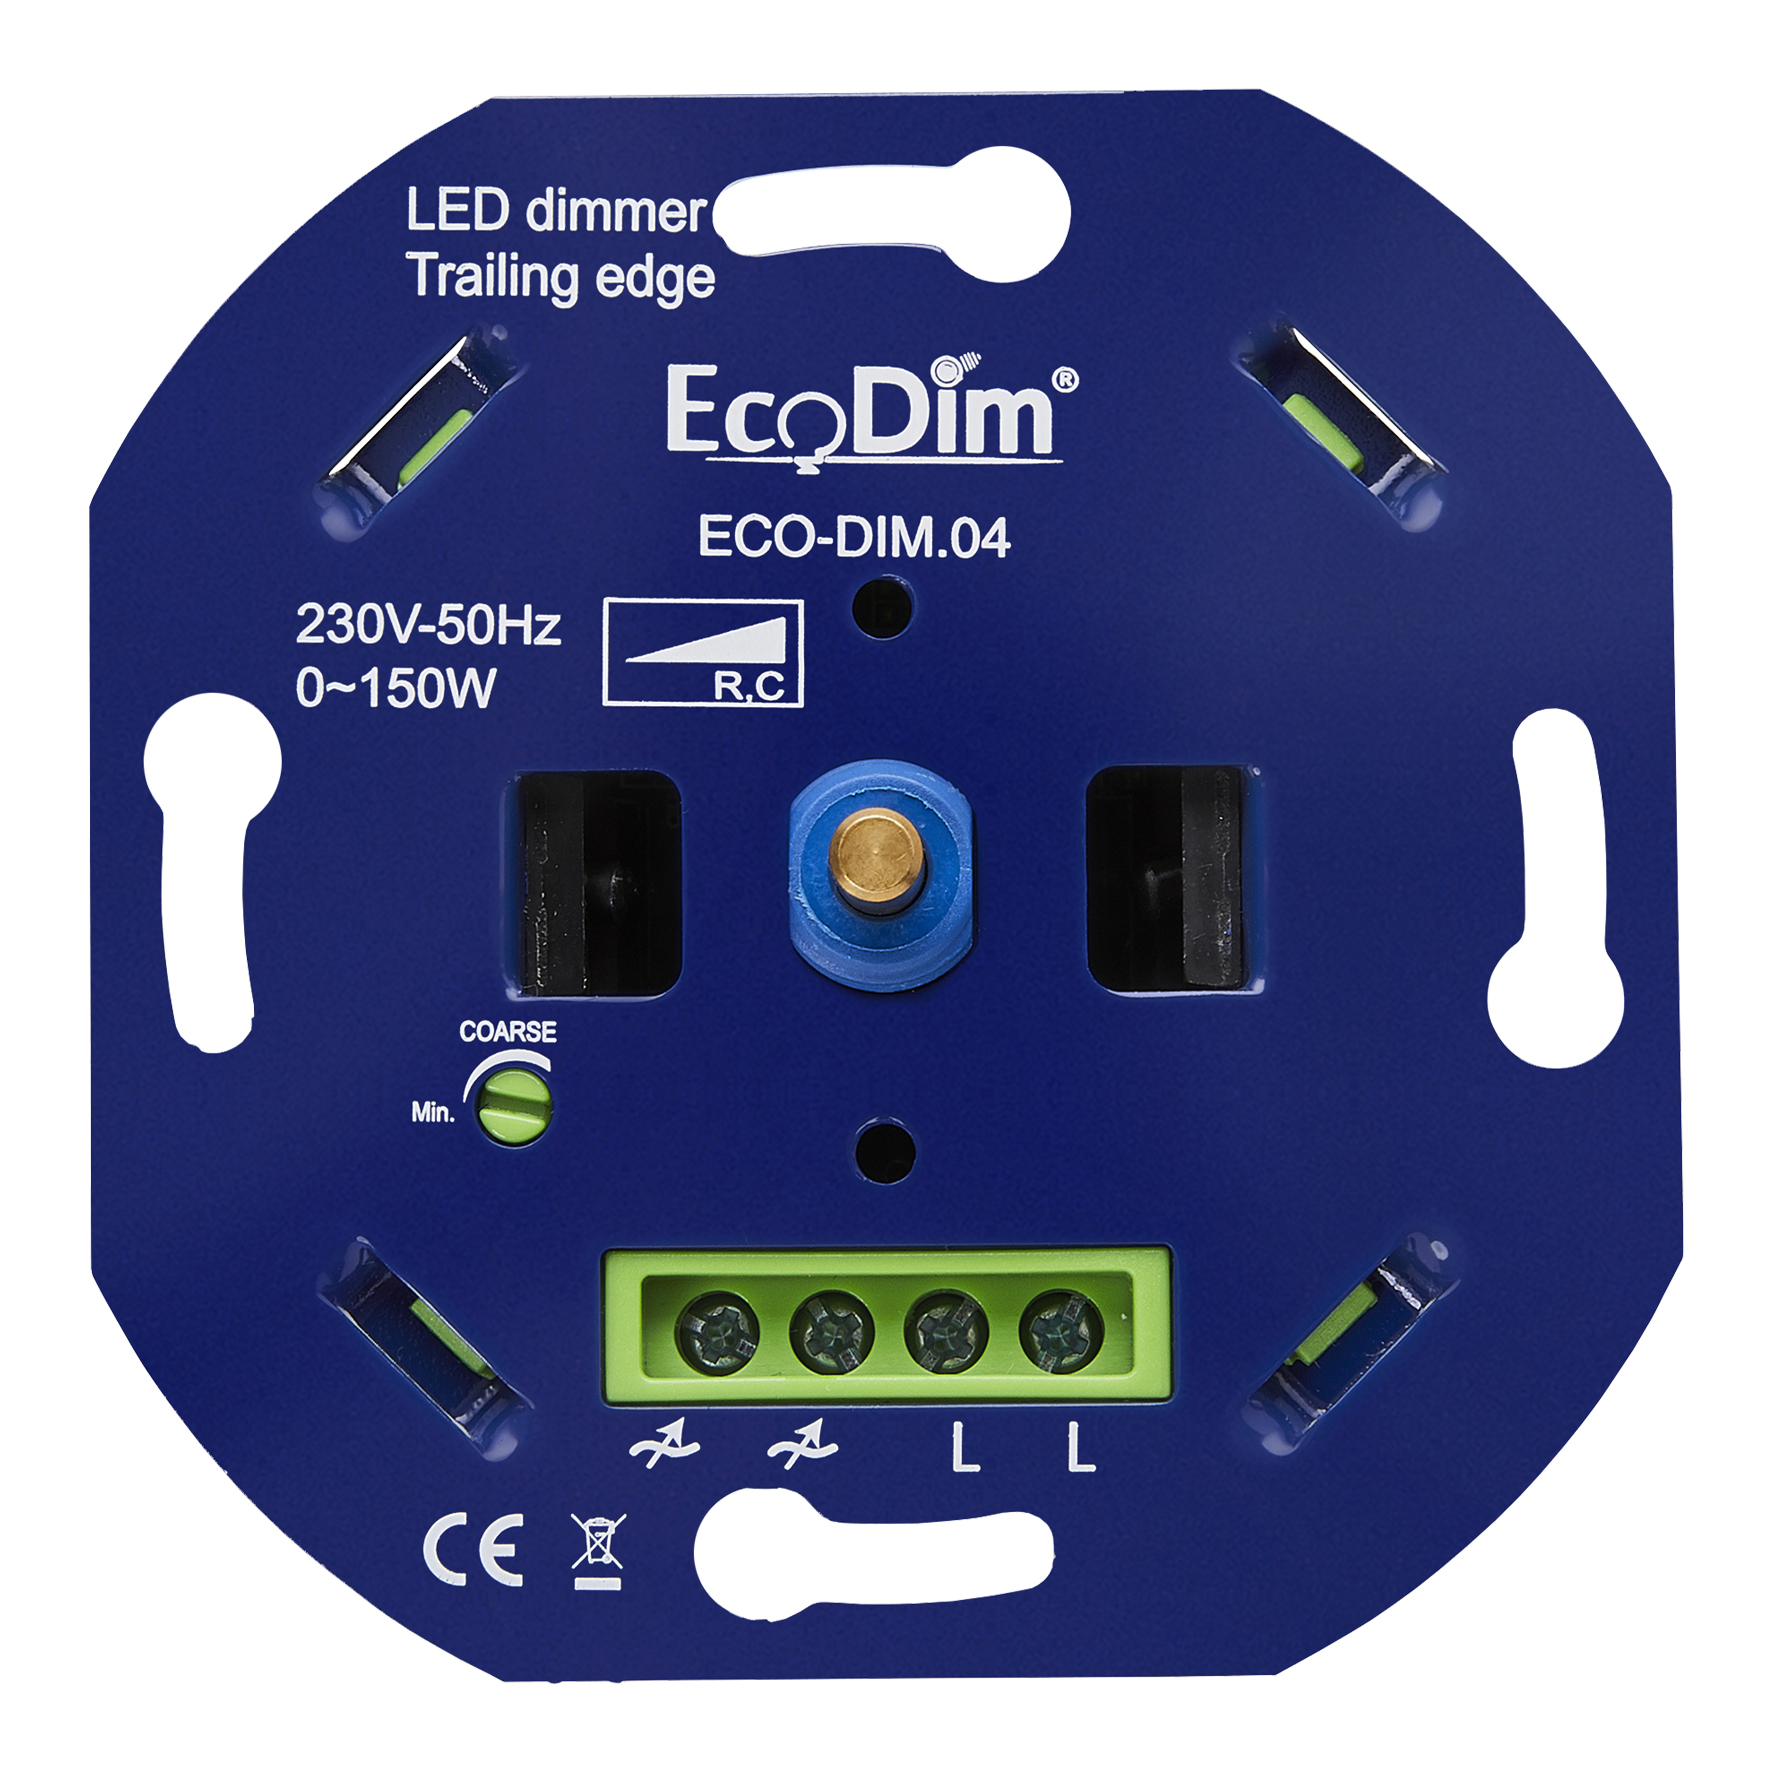 EcoDim ECO-DIM.04 LED Dimmer uni 0-150W Phase Cut (RC)